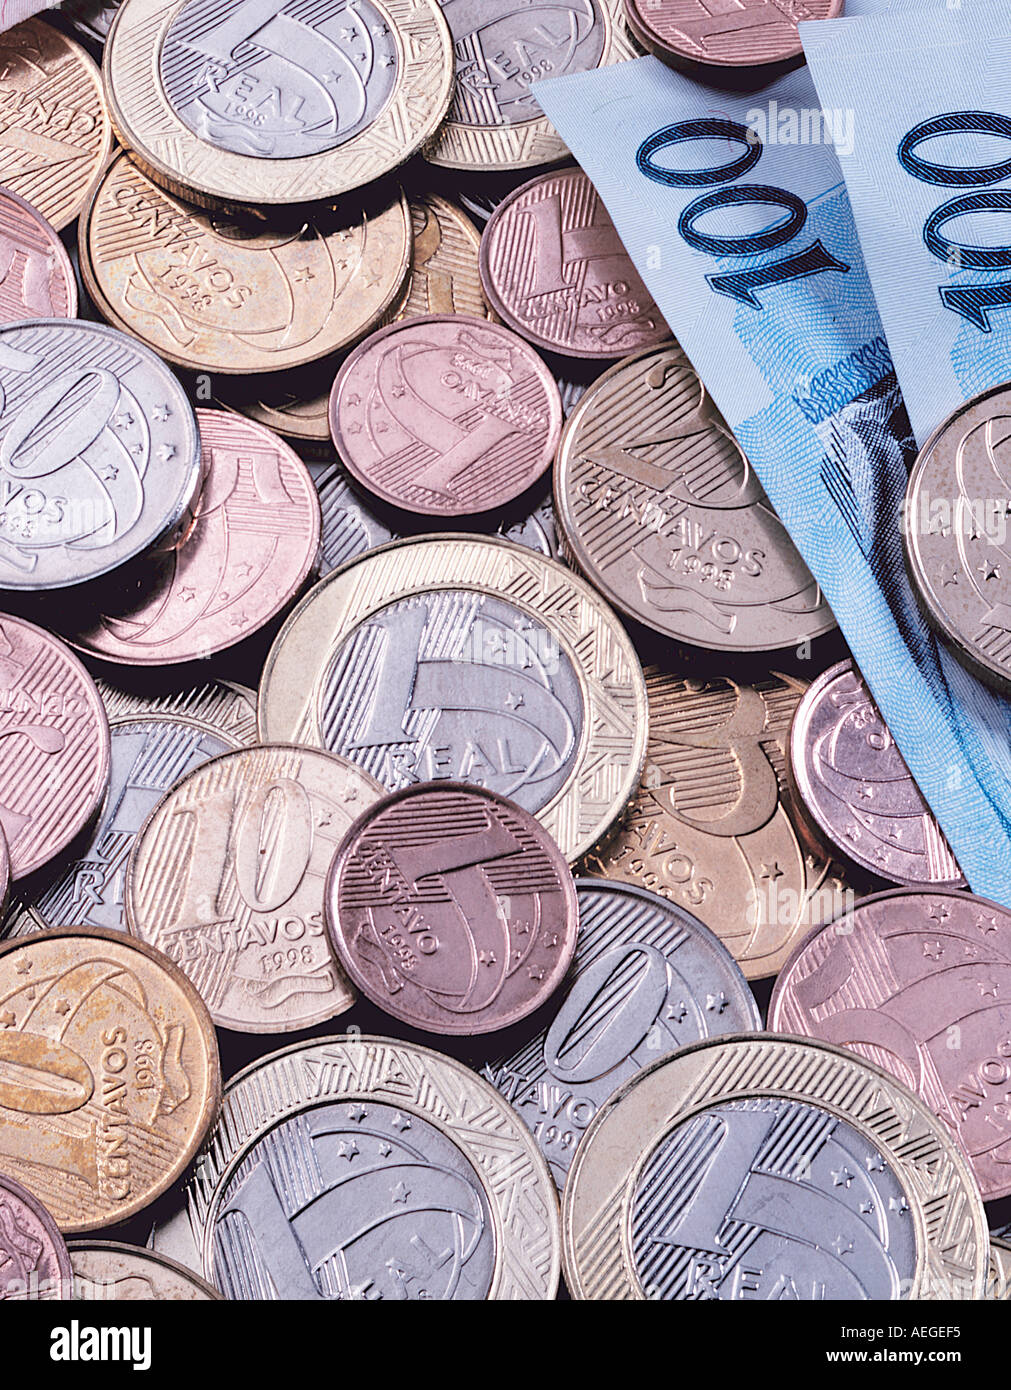 Büro brasilianischen Währung real Reais Münzen Rechnungen Handel Wert Reichtum Cent Wirtschaft Matallic runden glänzenden Hintergrund Textur miscel Stockfoto